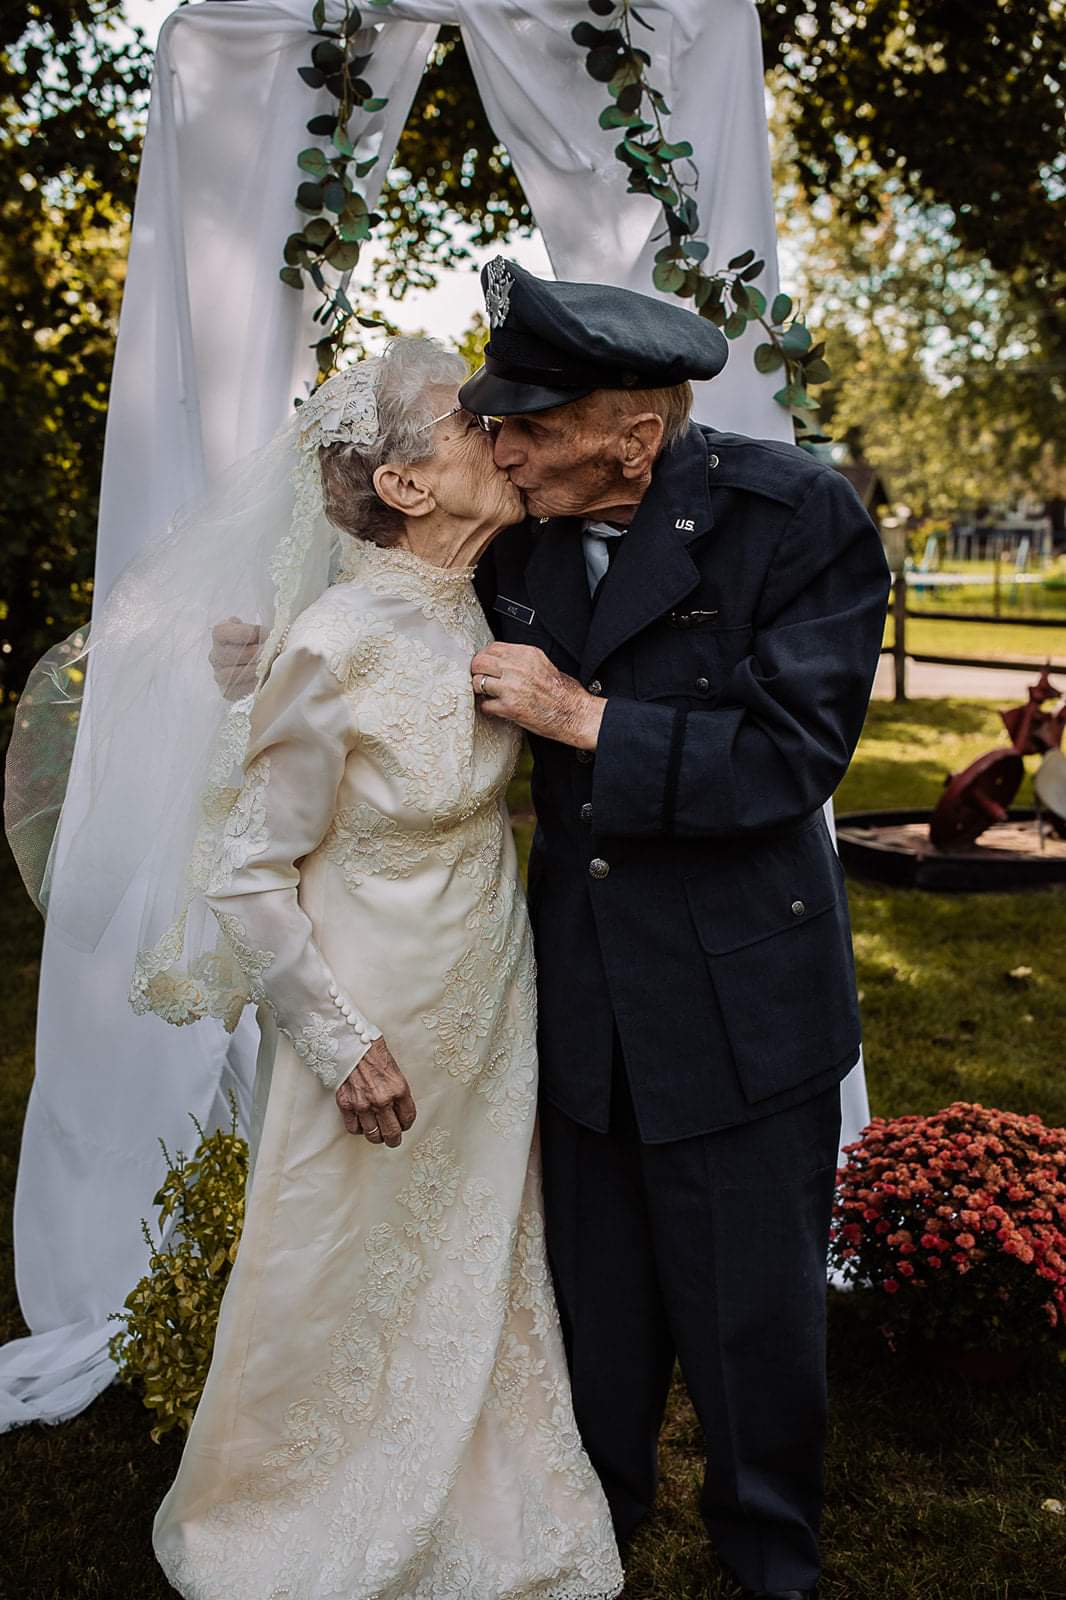 Истории за живота - сватбена фотосесия след 77 години брак